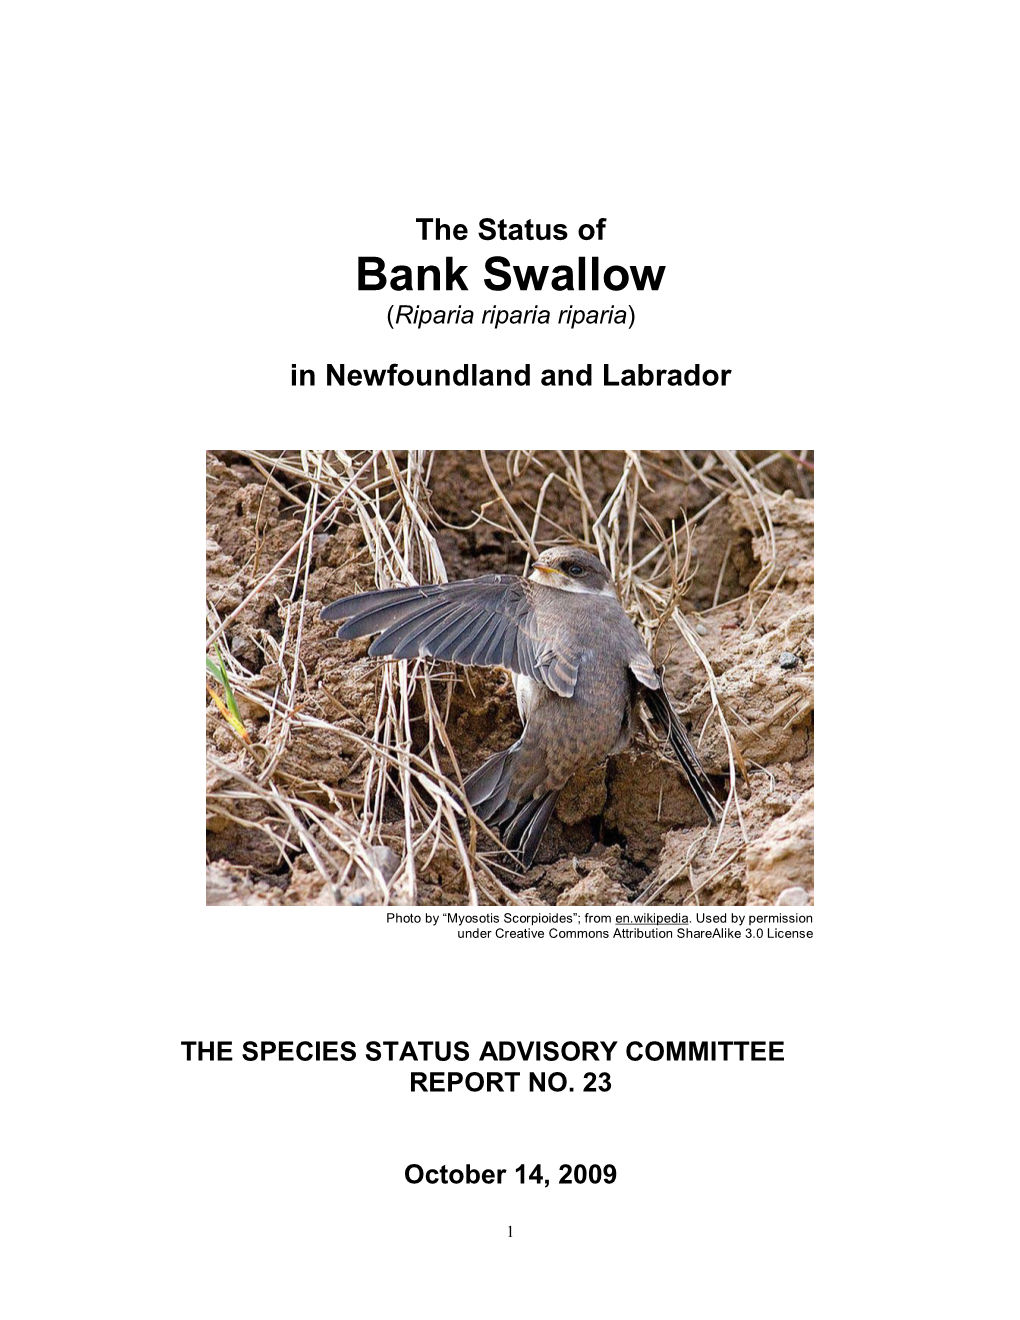 The Status of Bank Swallow (Riparia Riparia Riparia)